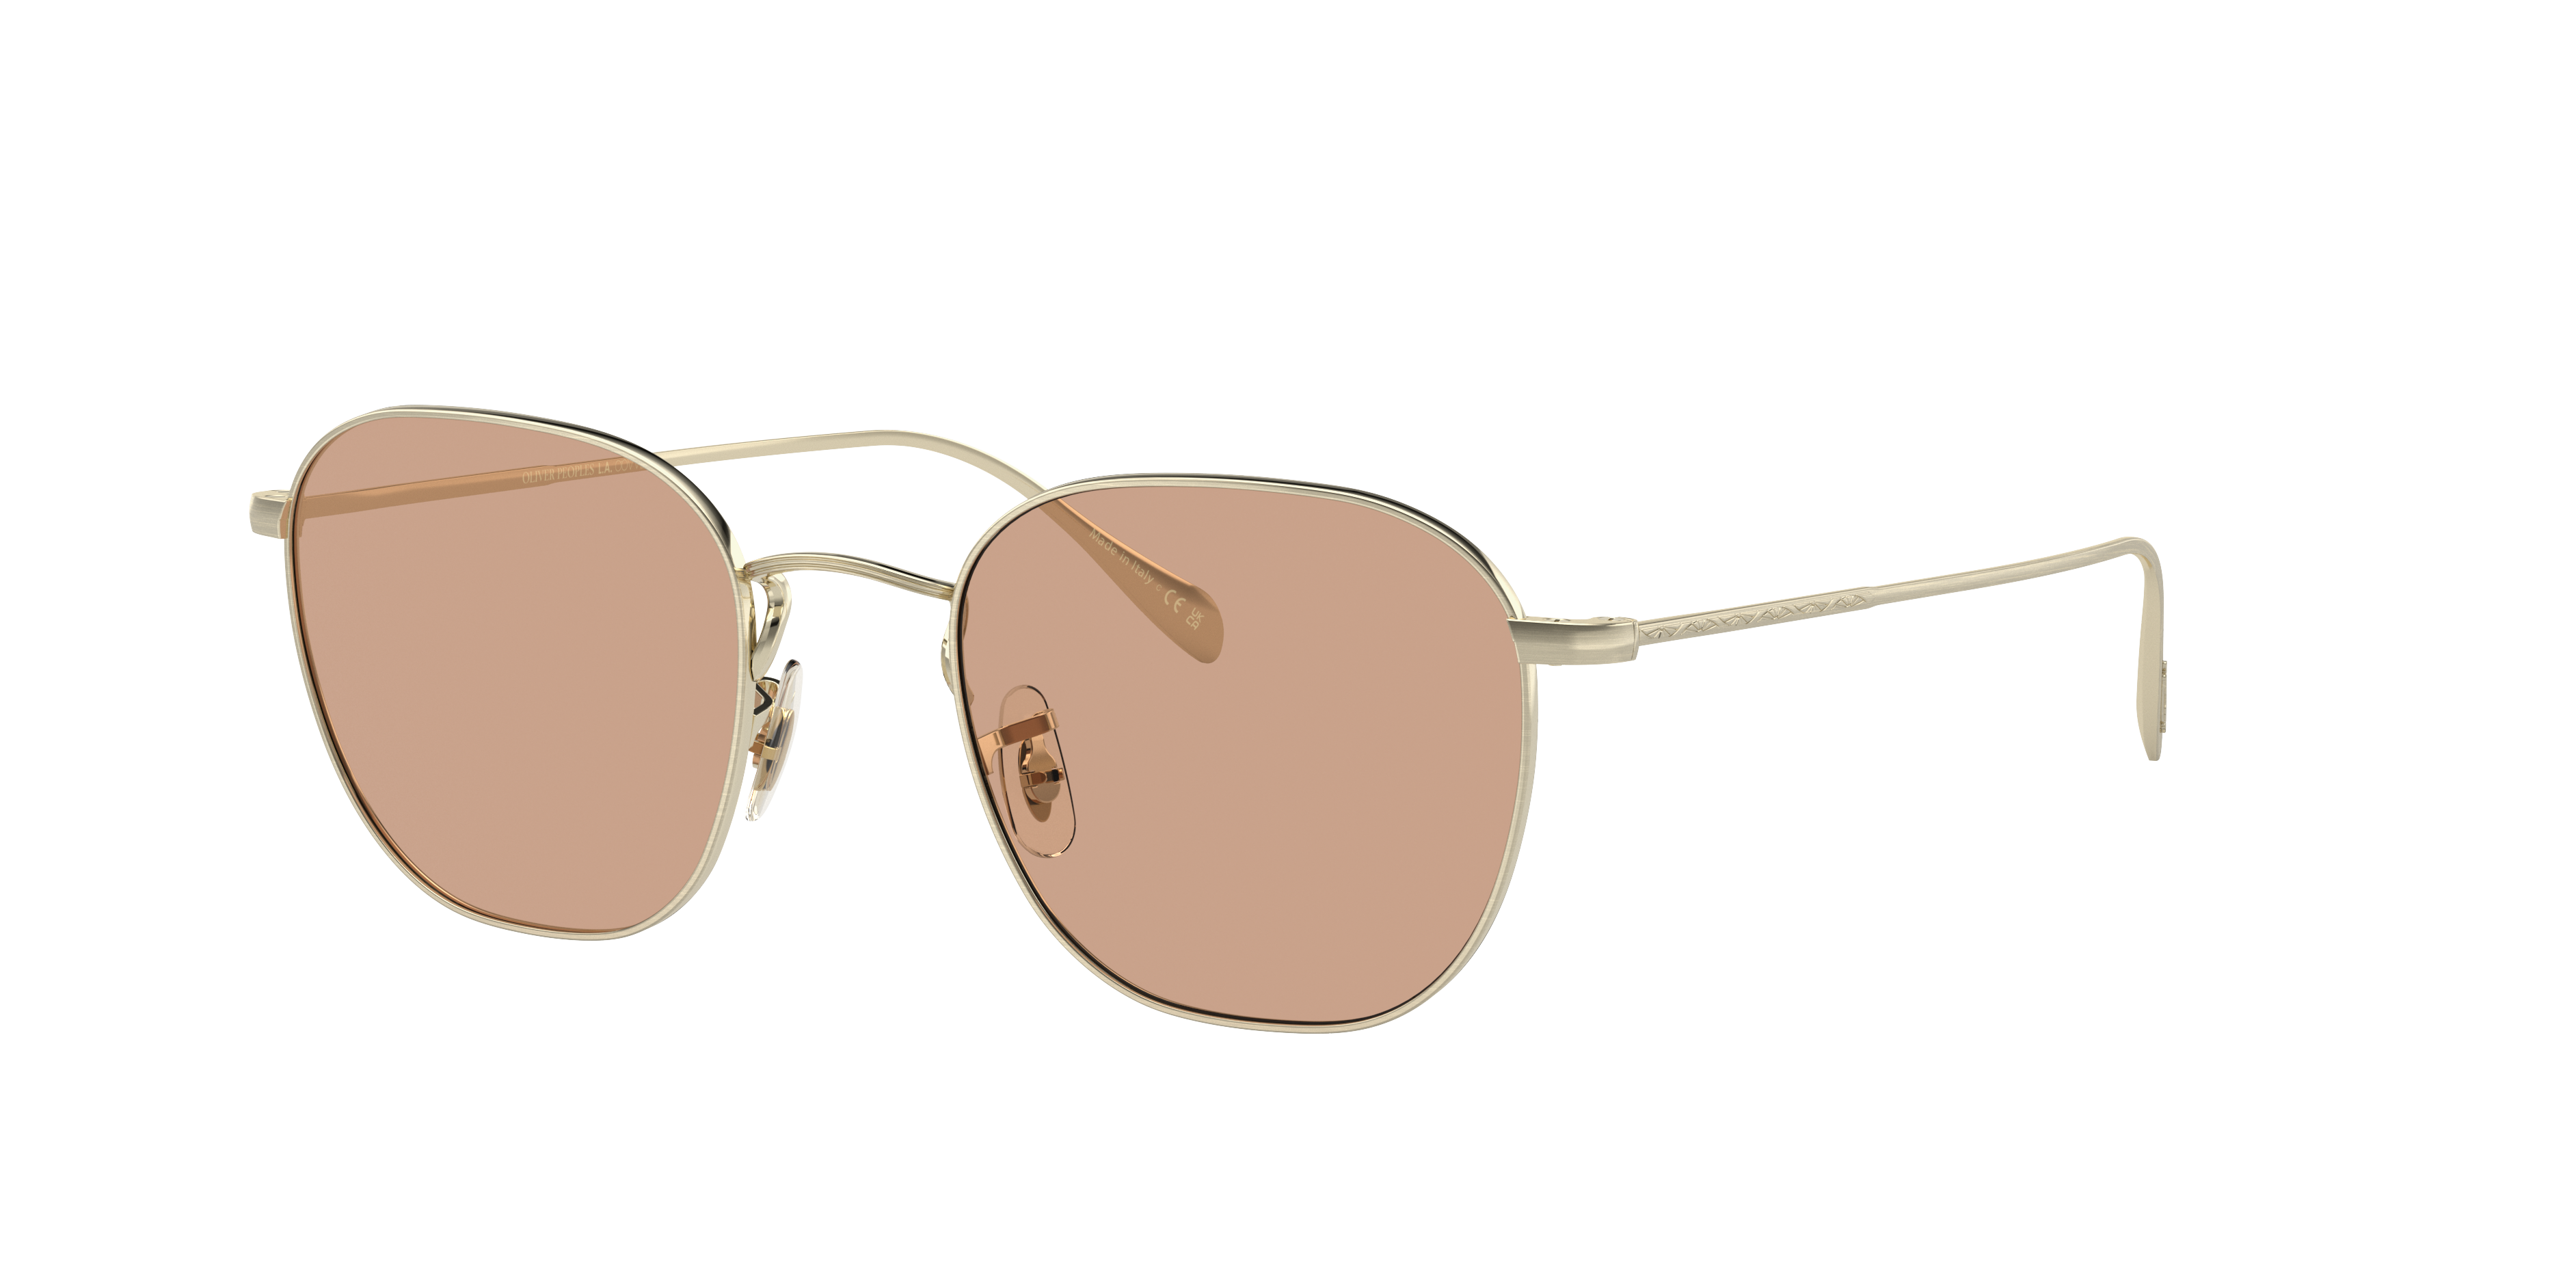 Eyeglasses OV1305 - Brushed Gold - Dusk Beach - メタル | Oliver